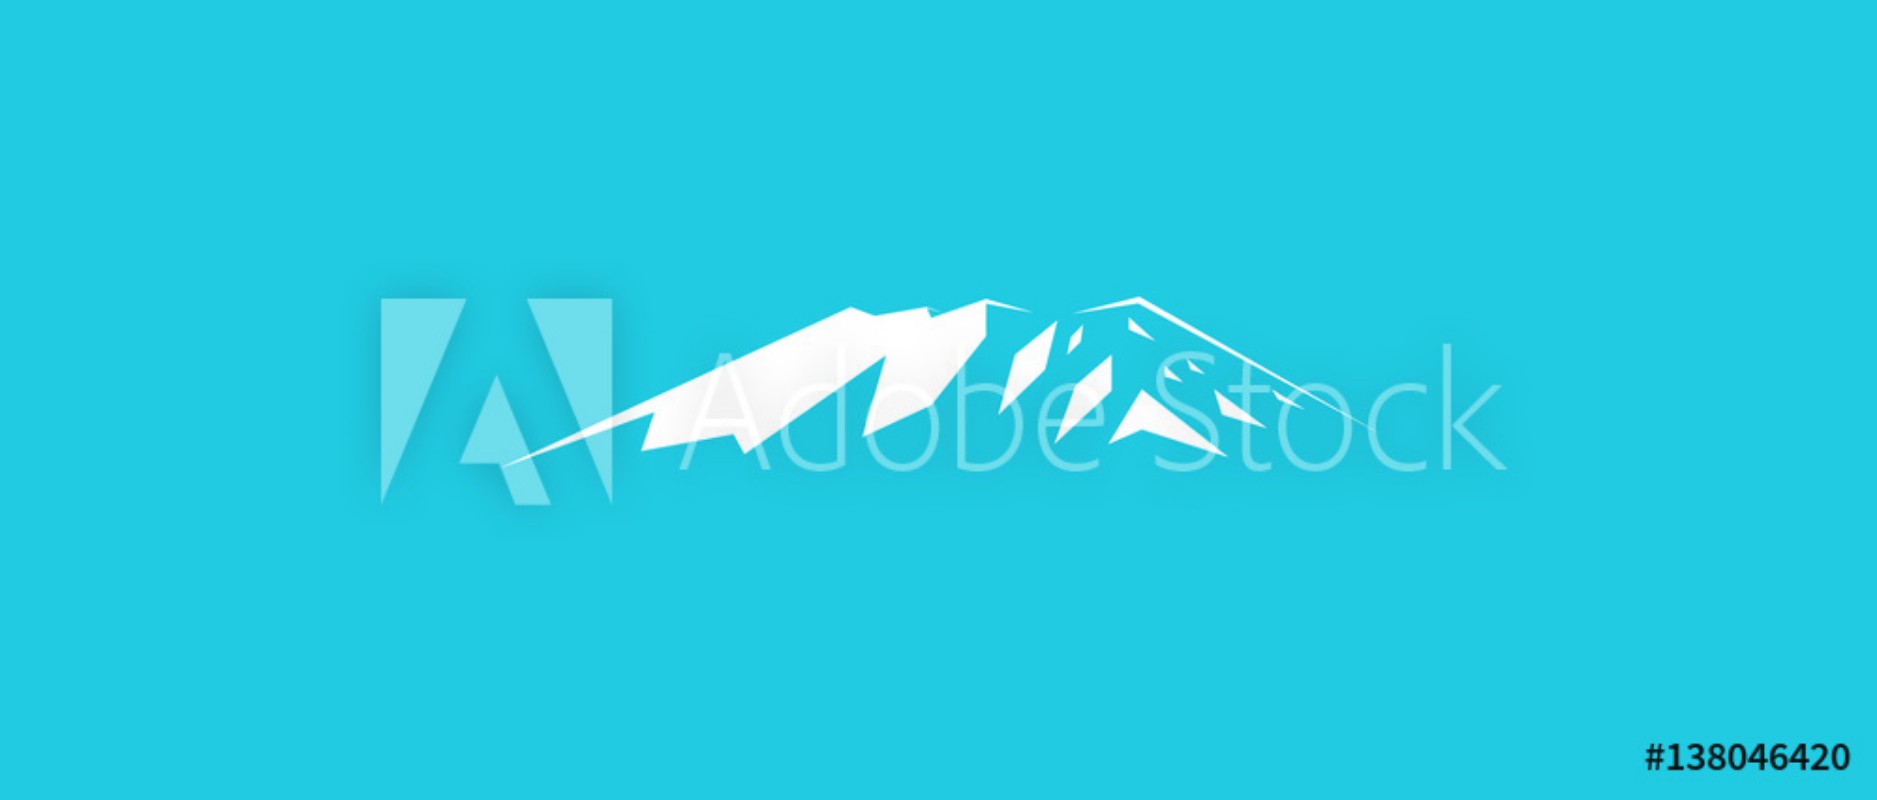 Picture of Snow mountains peak Kilimanjaro logo  Blue background